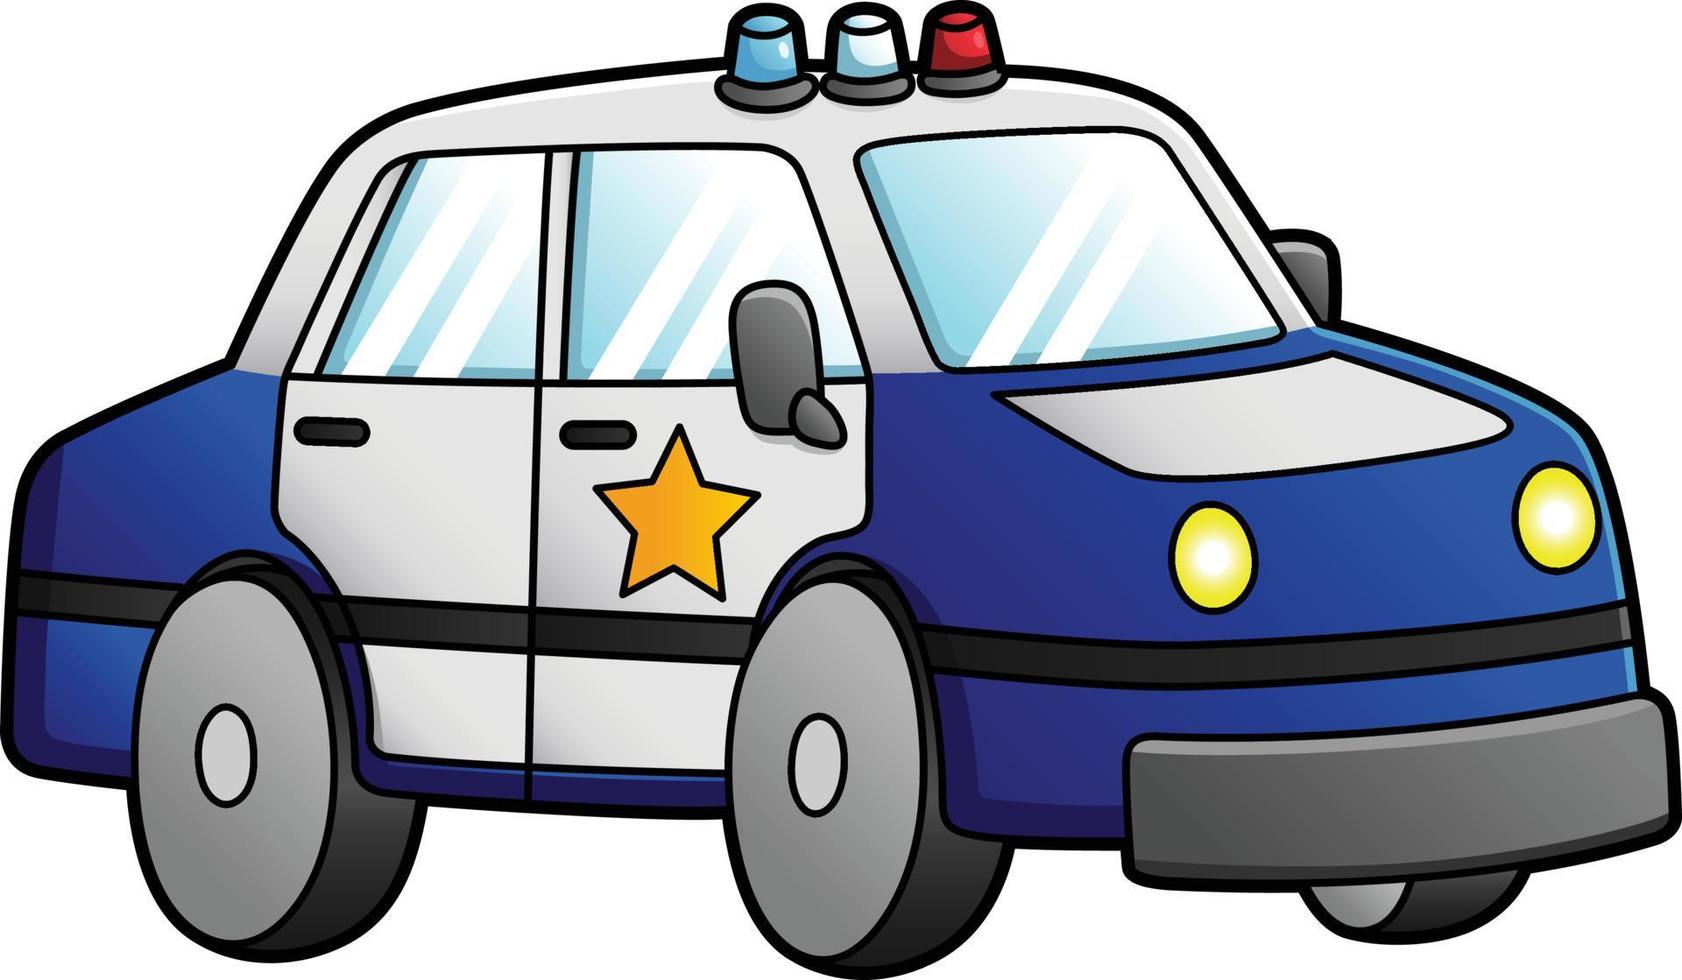 Página para colorir com carro de polícia dos desenhos animados